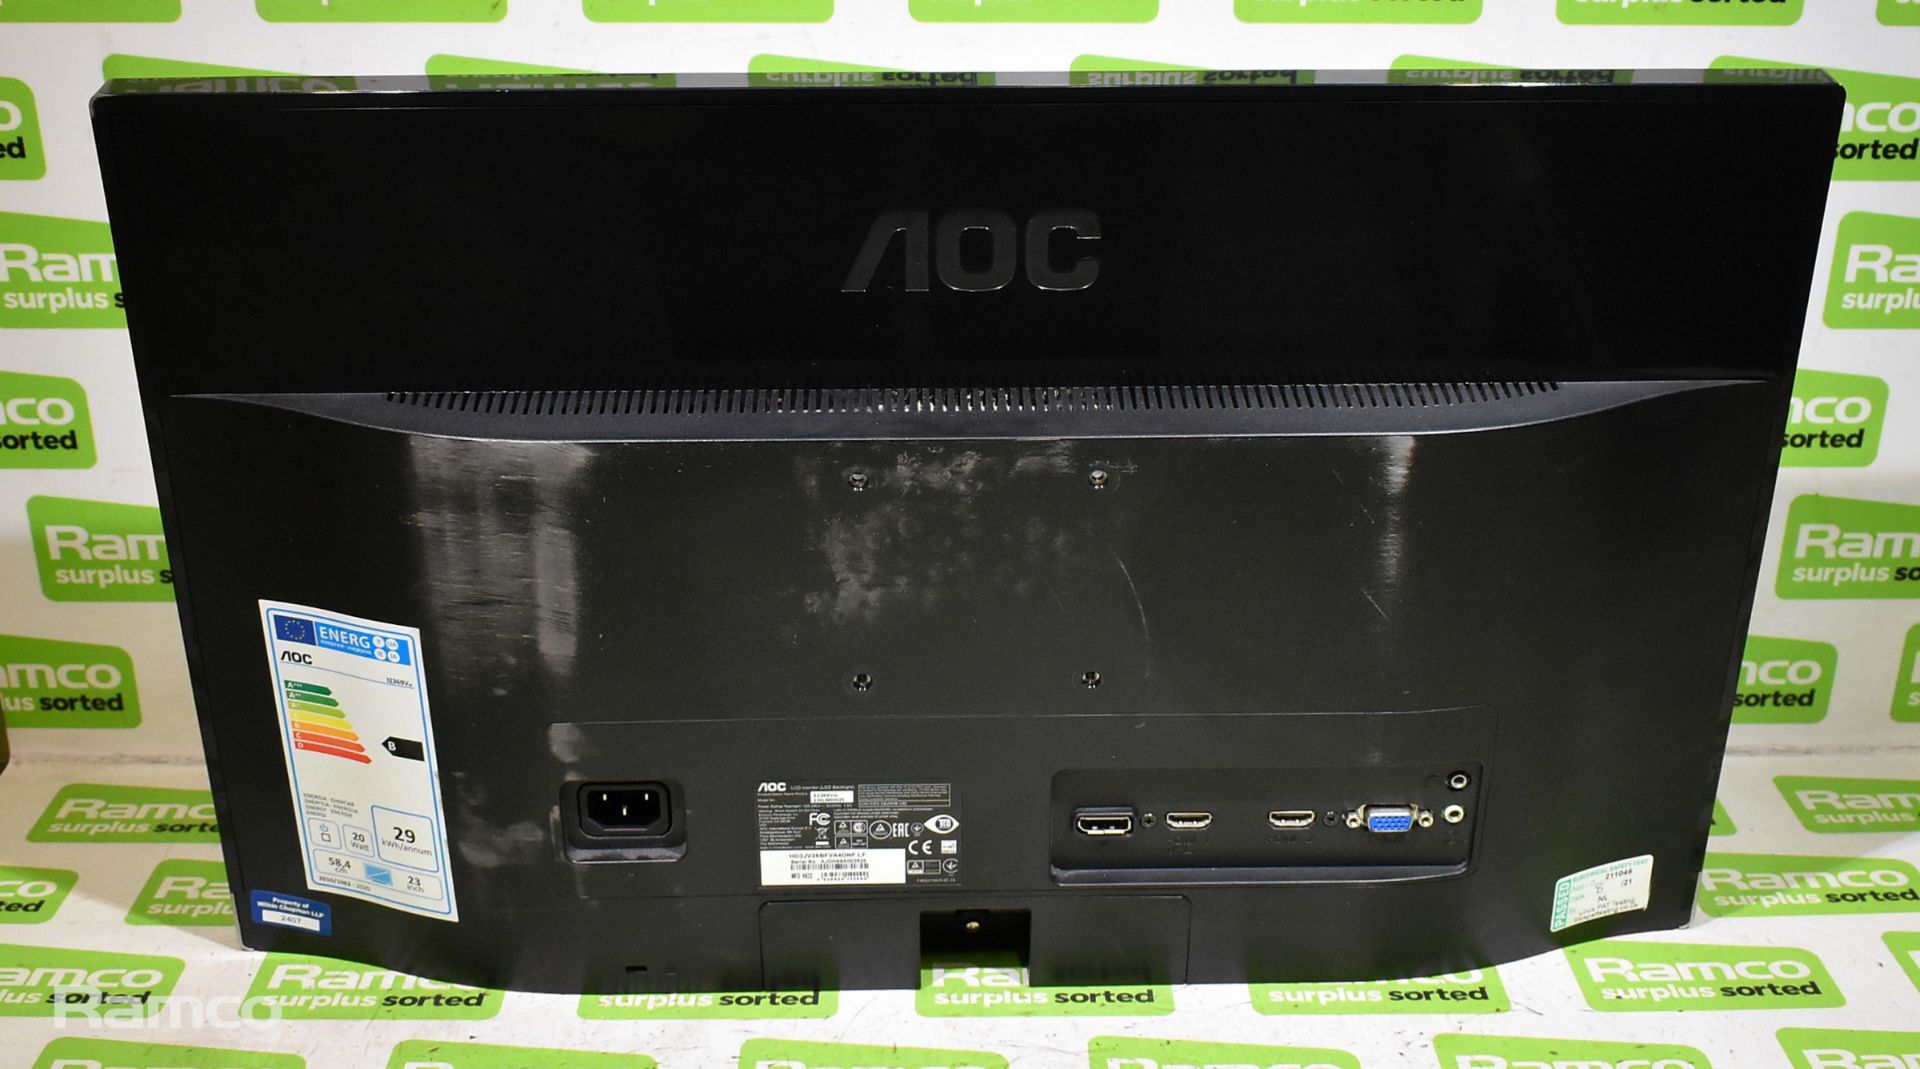 4x AOC 12369Vm 230LM00025 23 inch monitors - H 320 x W 530 x D 50mm - Bild 15 aus 16